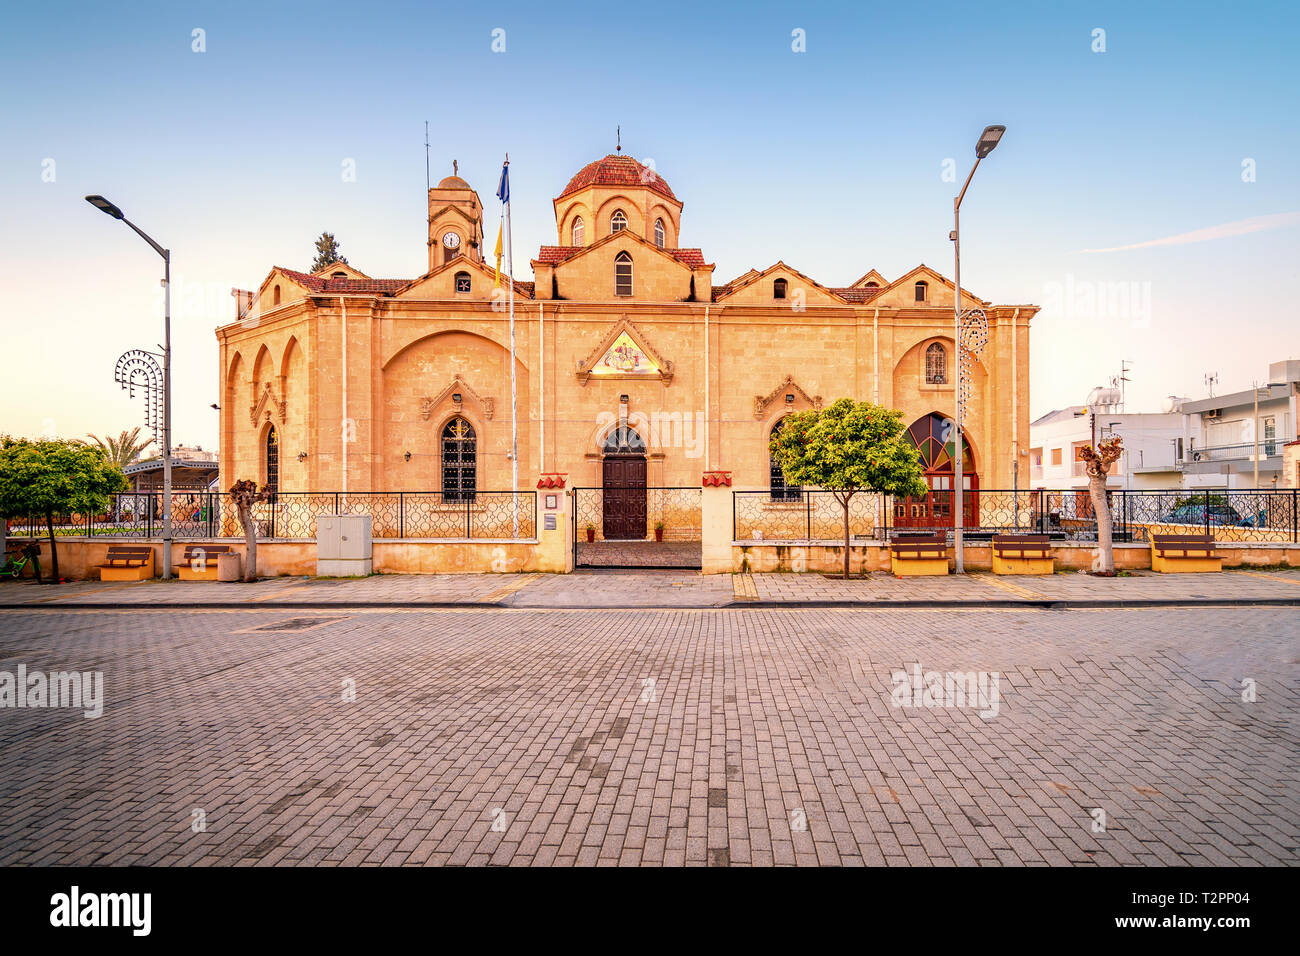 Orthodoxe St. George Kirche in Nikosia, Zypern. Eines der historischen Wahrzeichen der Stadt. Stockfoto